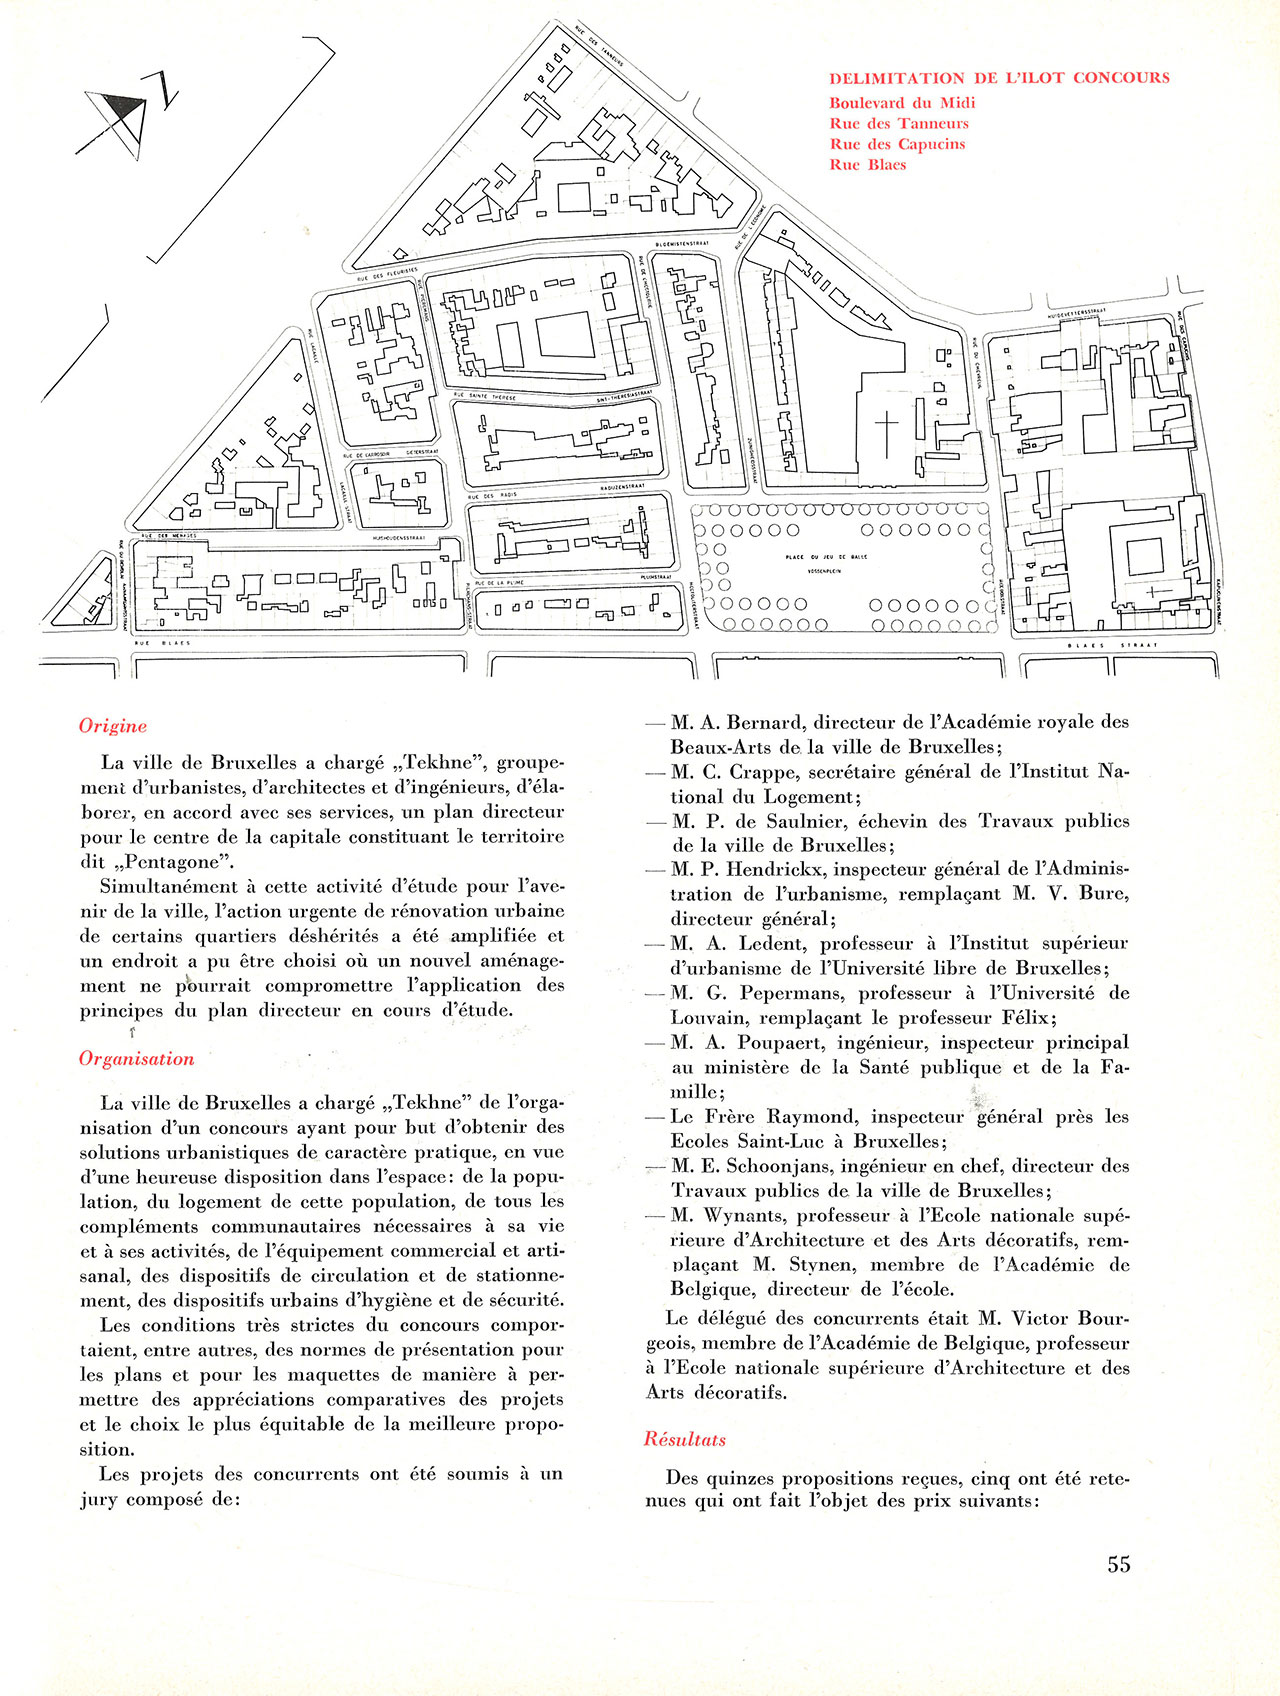 Concours d’idées 1961 de la Ville de Bruxelles